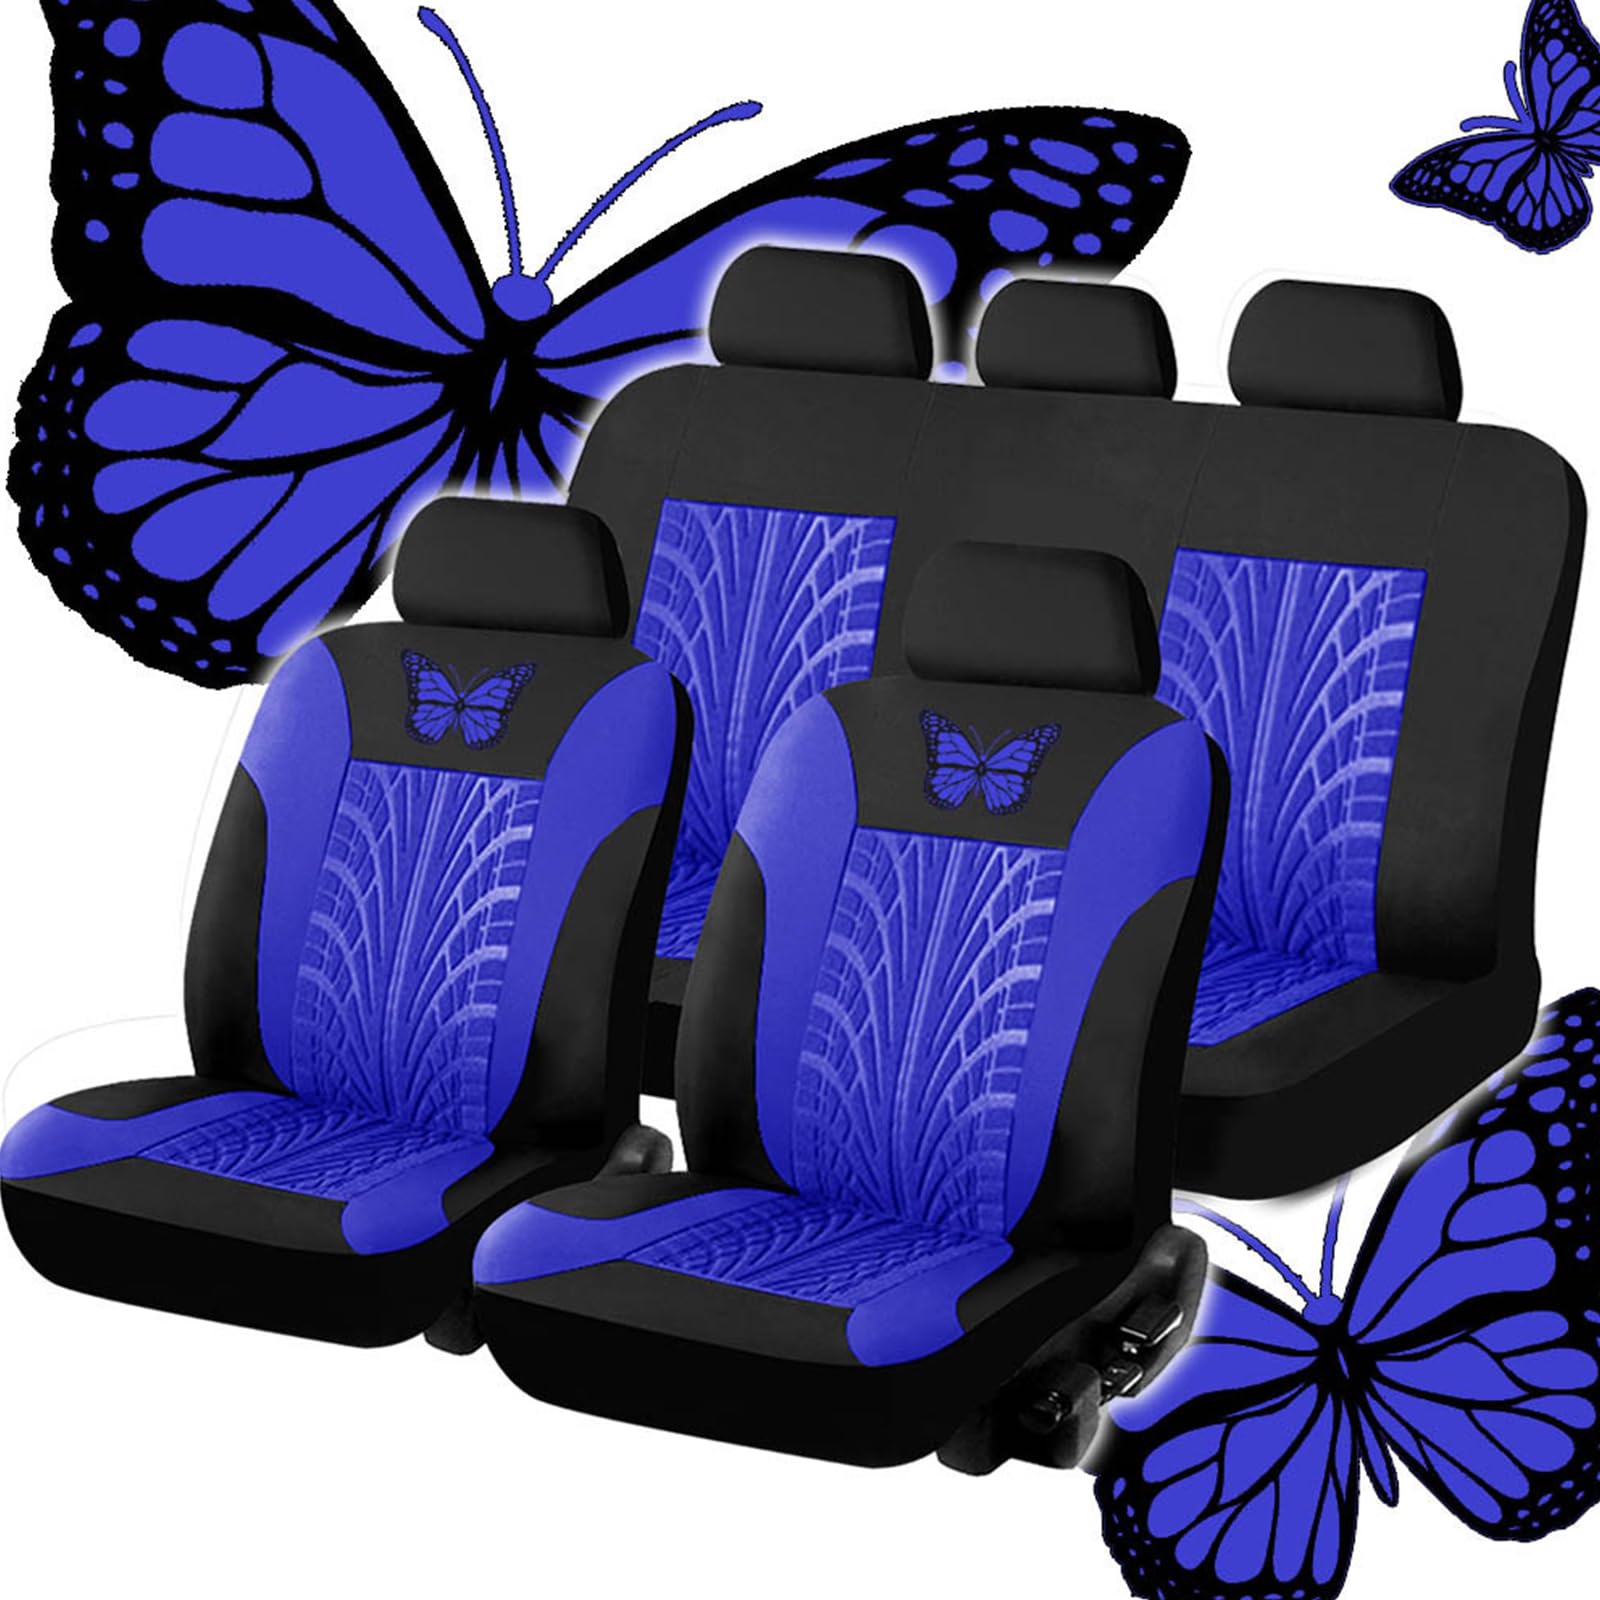 SNXLW 5 Sitzplätze Universal Sitzbezug Auto für BMW Z4/Z4M G29 E85 E86 E89 Roadster/E86 Coupé Autositzbezug Sitzbezüge Vorne Und Hinten Sitzschoner,Blue von SNXLW